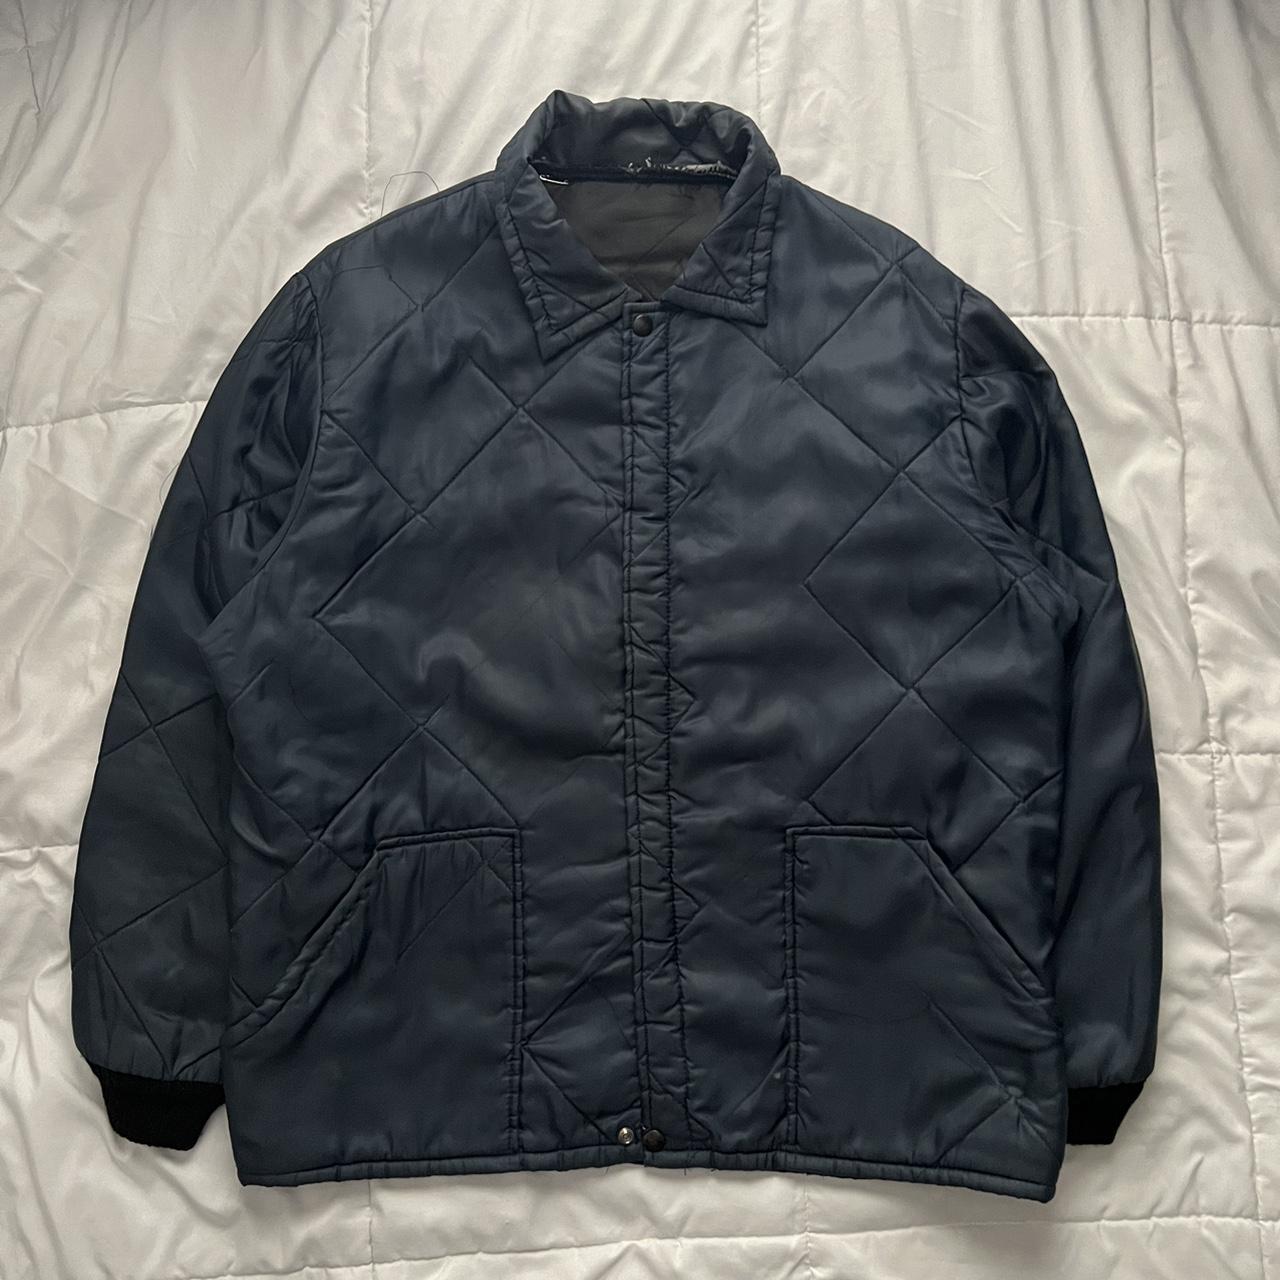 (FOR SALE) Vintage Puffer Liner jacket Price: $12.00... - Depop